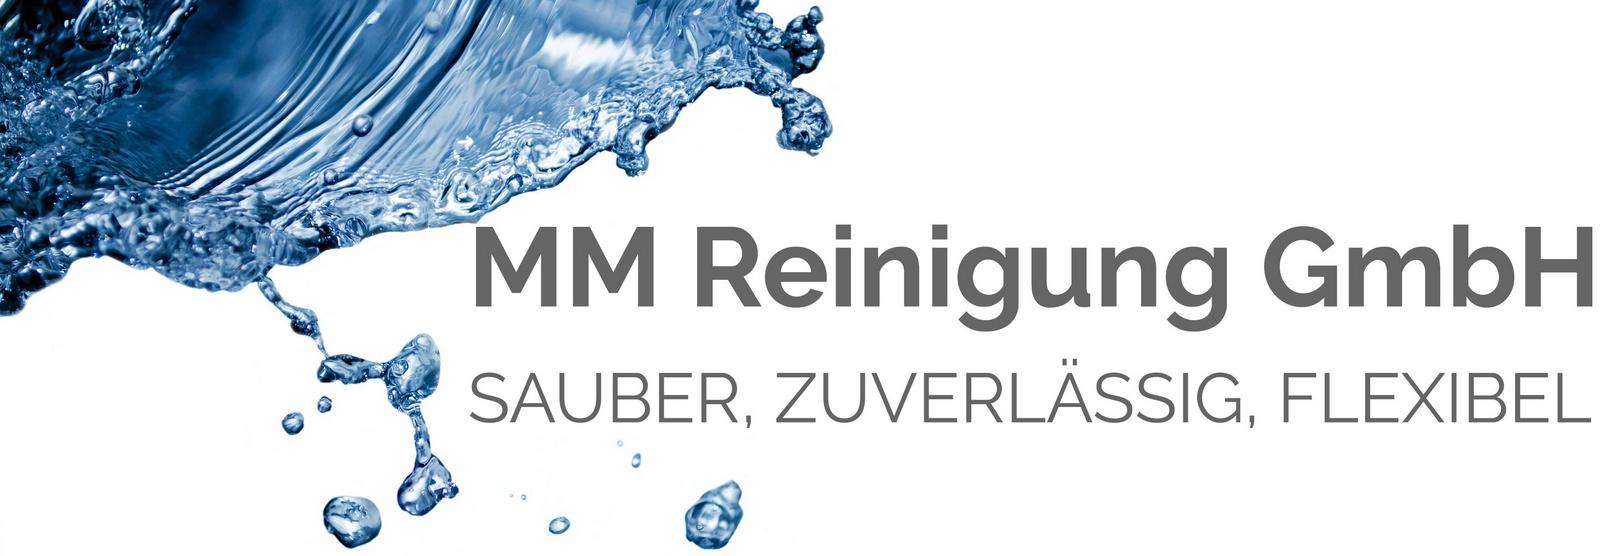 MM Reinigung GmbH